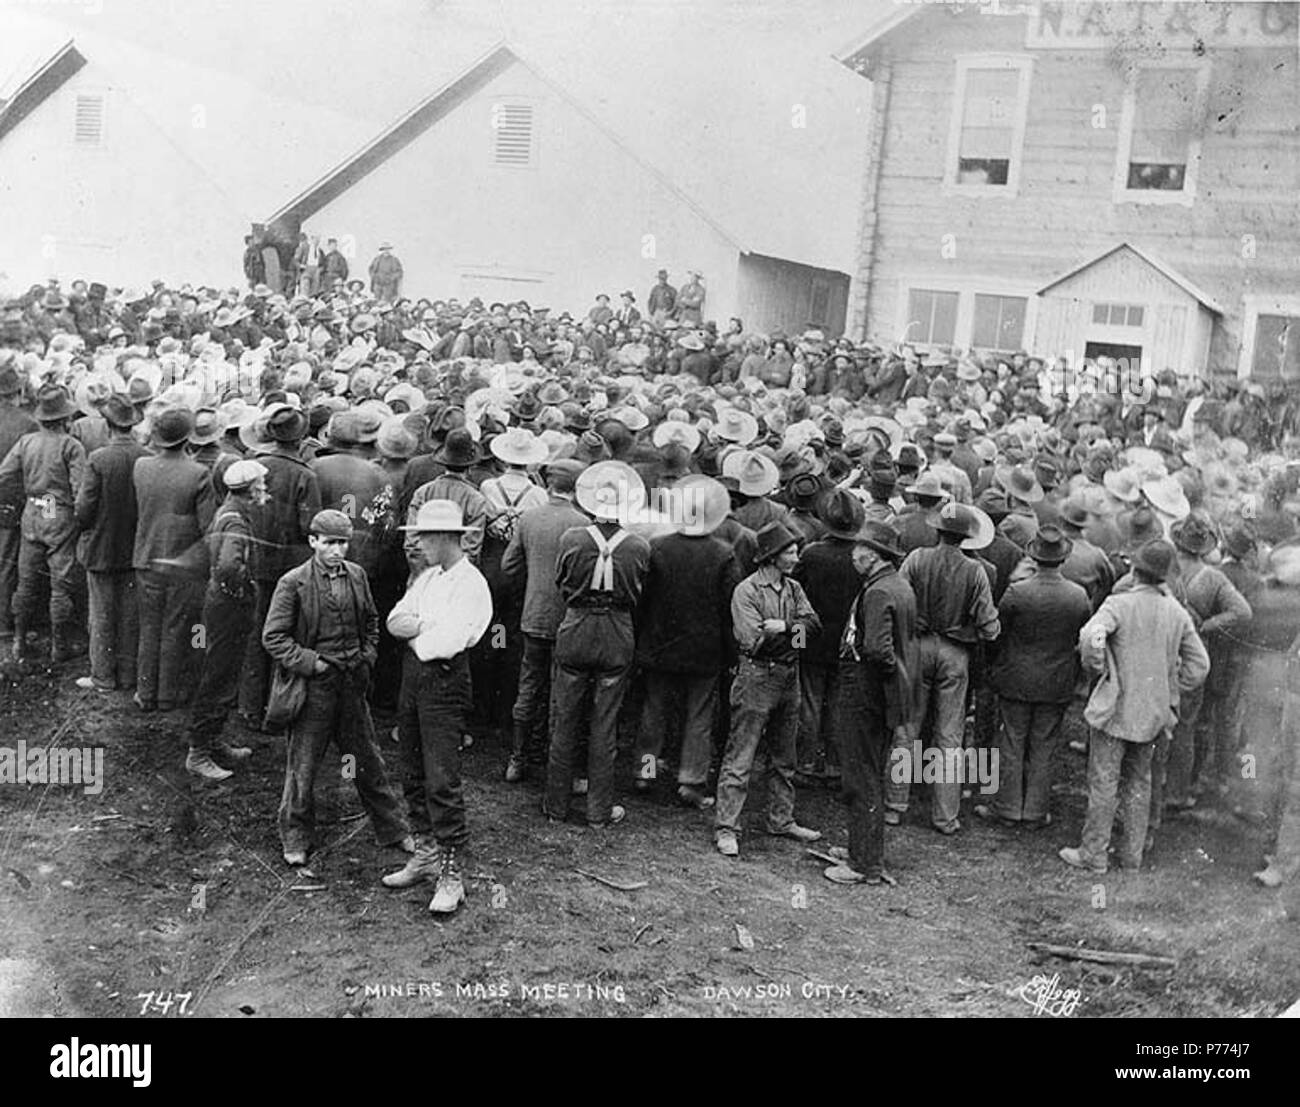 . Englisch: Bergarbeiter in der Straße versammelt für eine Sitzung, Dawson City, Yukon Territory, Ca. 1898. Englisch: Legende auf Bild: 'Miners Massenversammlung. Dawson City "Klondike Gold Rush. Themen (LCTGM): Gold Miner ------ Yukon Dawson; Sitzungen ------ Yukon Dawson; Gebäude ------ Yukon Dawson. ca. 1898 9 Bergleute in der Straße versammelt für eine Sitzung, Dawson City, Yukon Territory, ca 1898 HEGG (154) Stockfoto